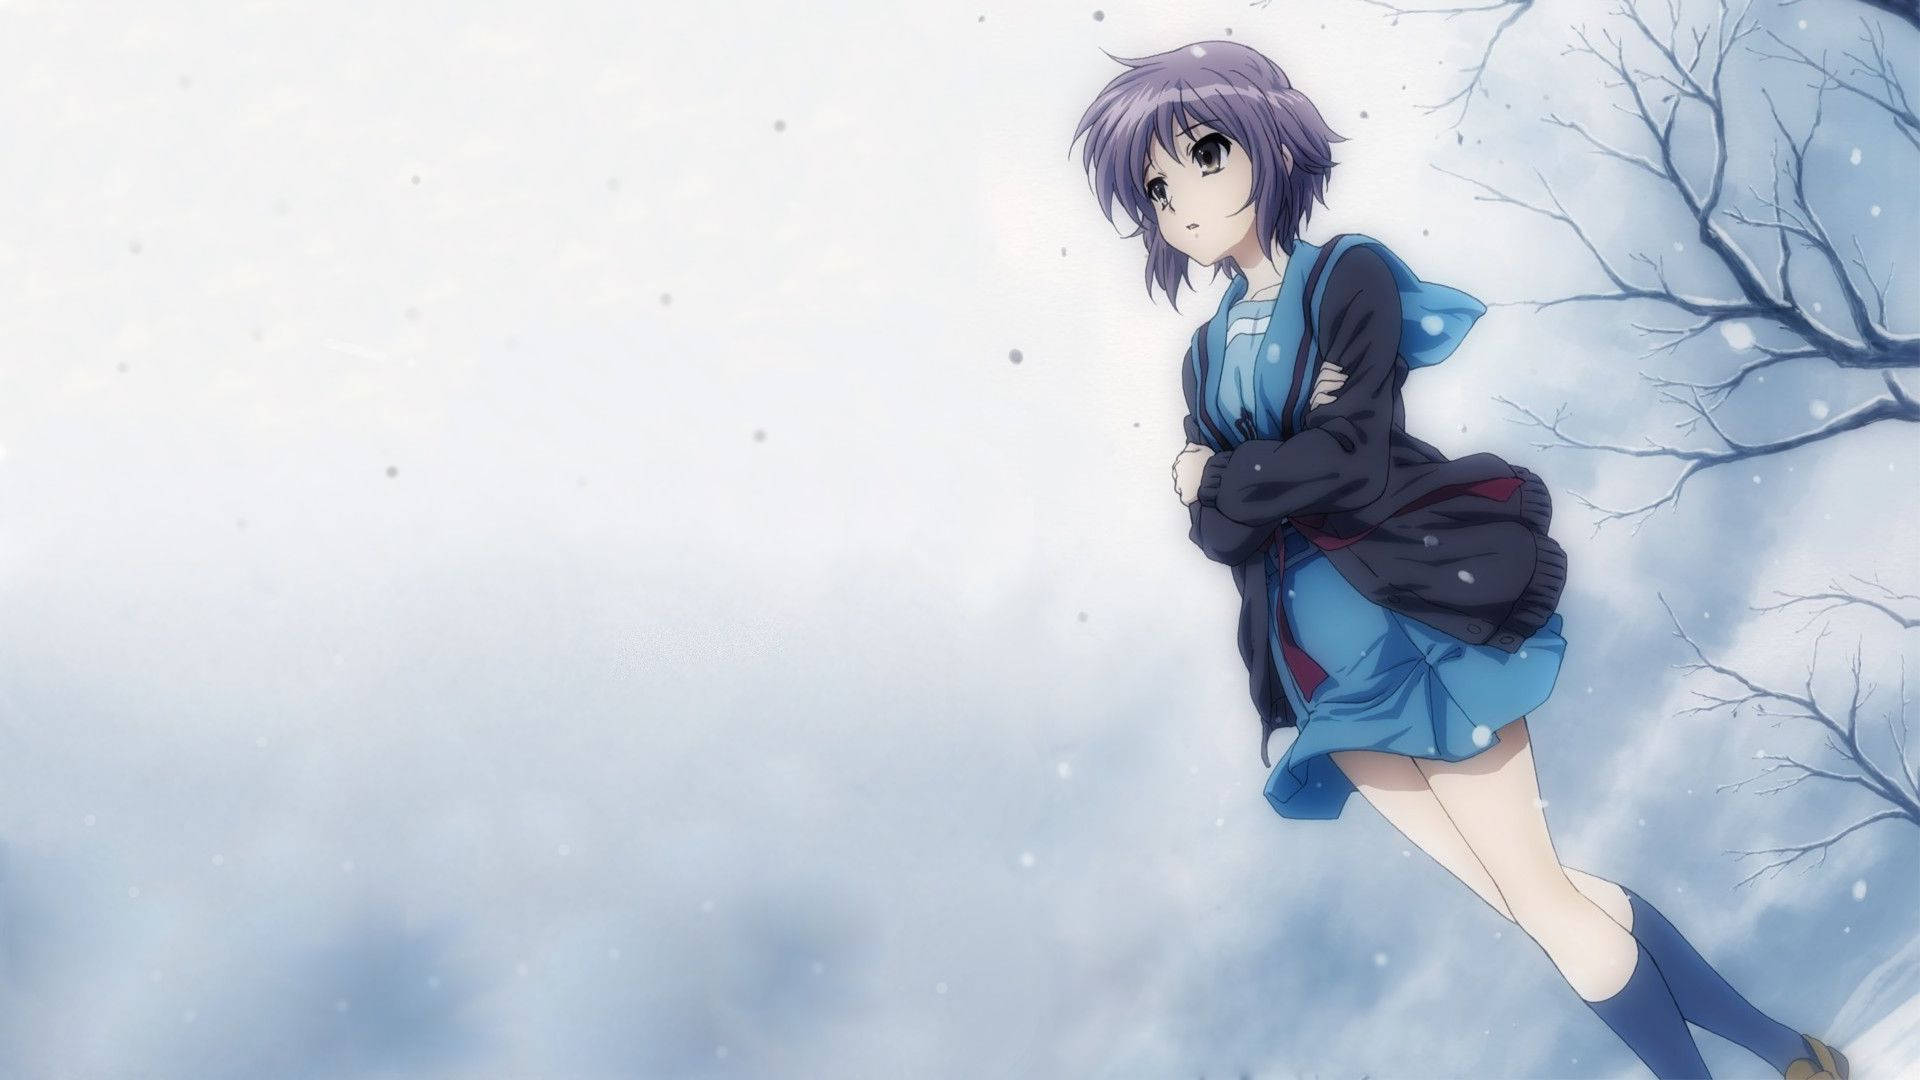 Sad Anime Alone Girl Aesthetic Background